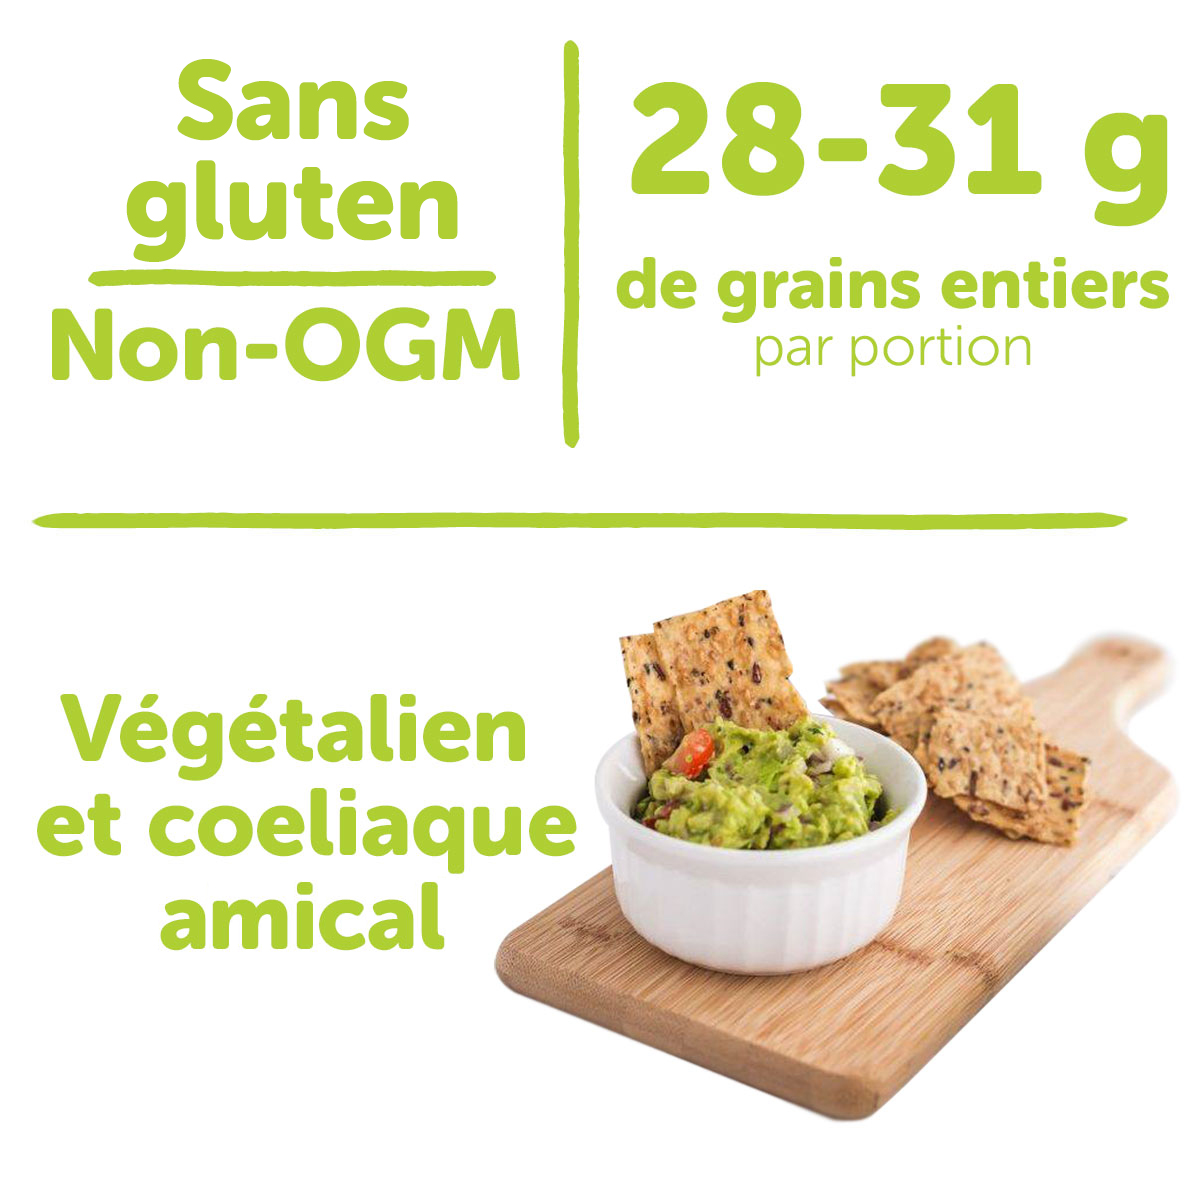 Sans gluten, non-OGM, 28-31 g de grains entiers par portion, végétalien et coeliaque amical